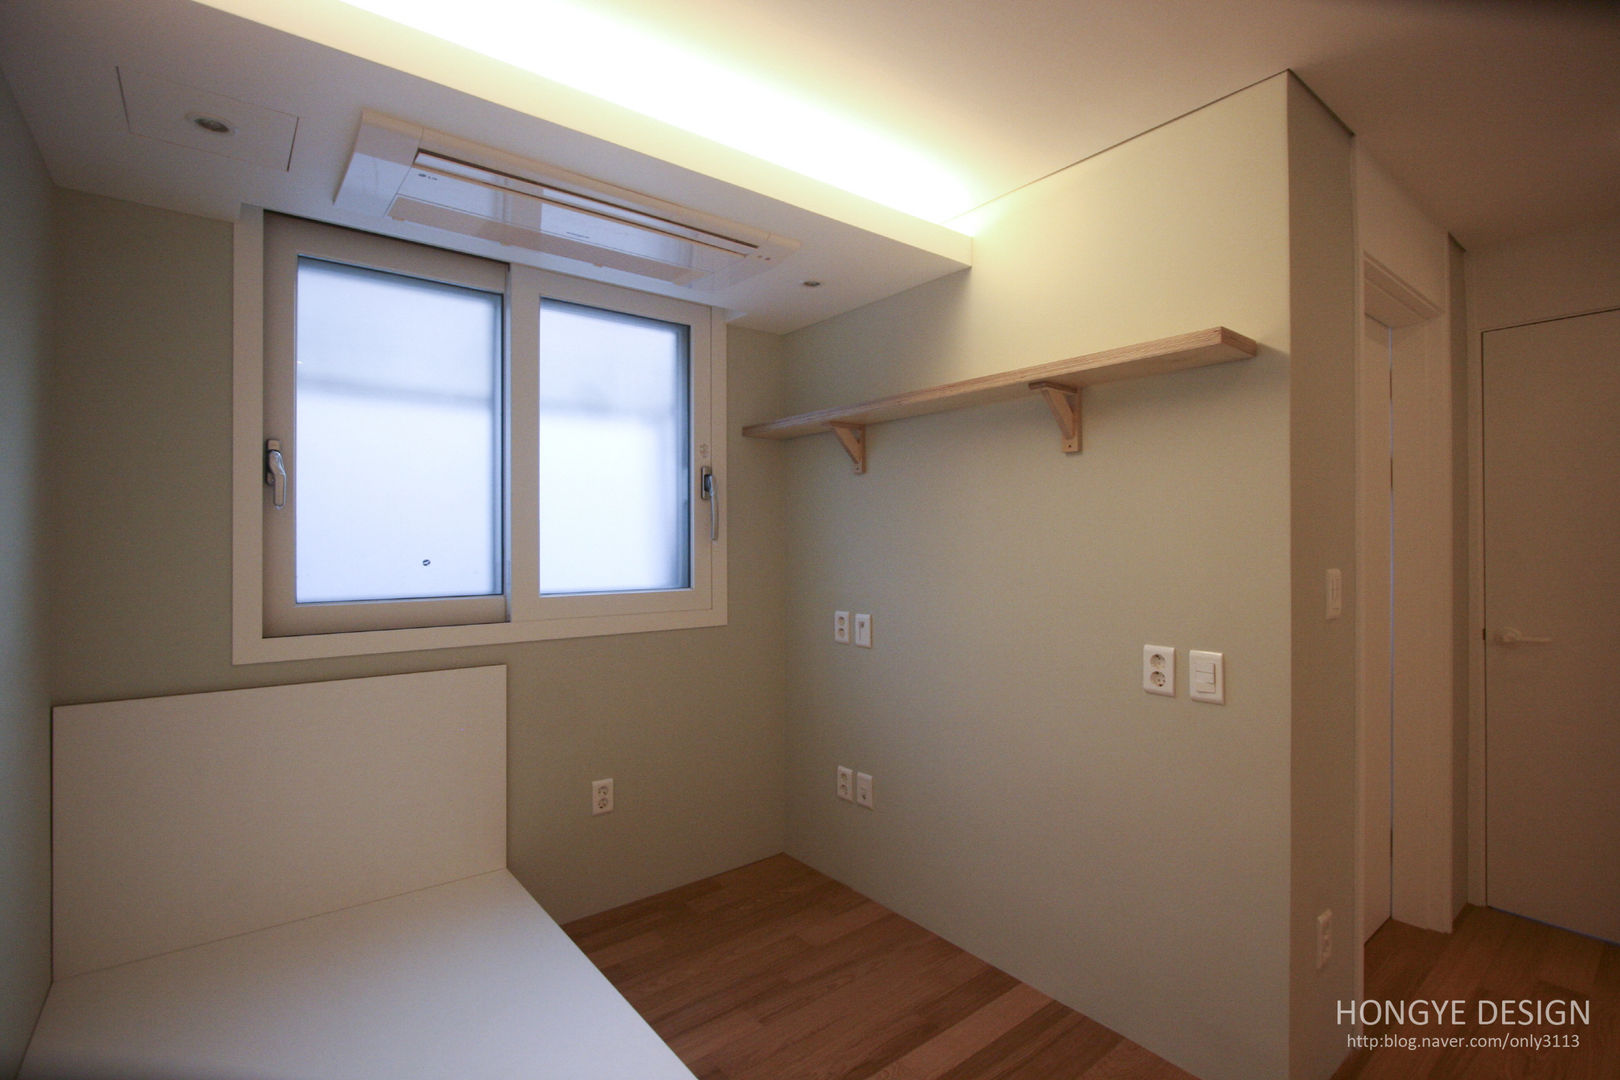 방안에 숨은책방, 작지만 효율적인 주택인테리어_26py, 홍예디자인 홍예디자인 モダンスタイルの寝室